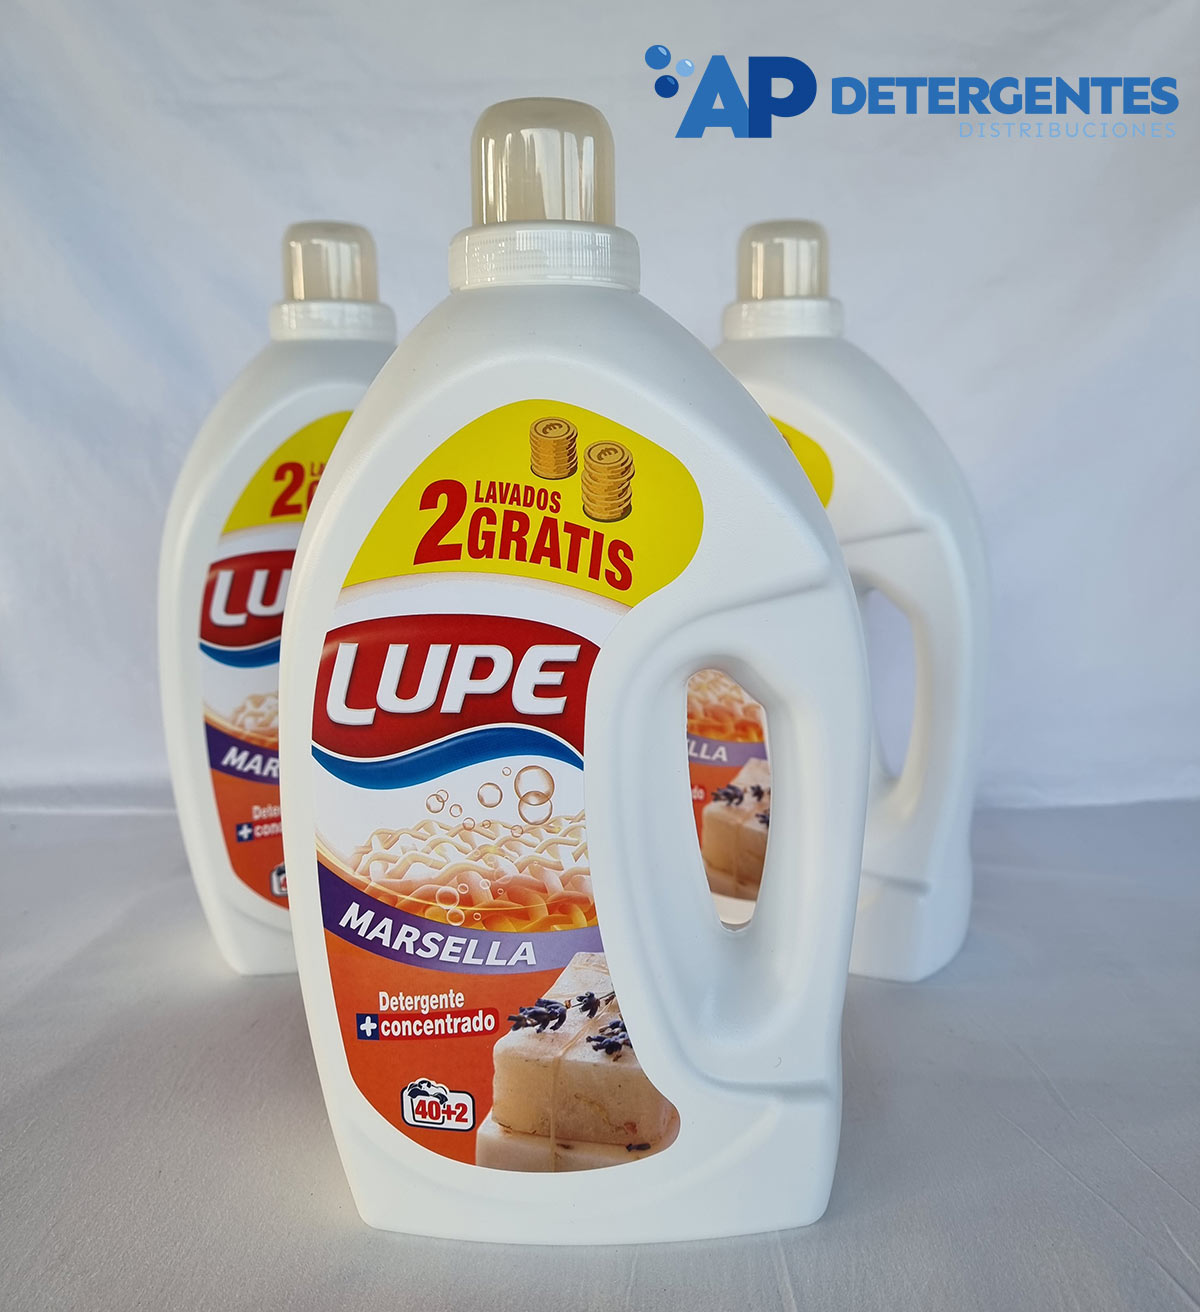 AP Detergentes Distribuciones